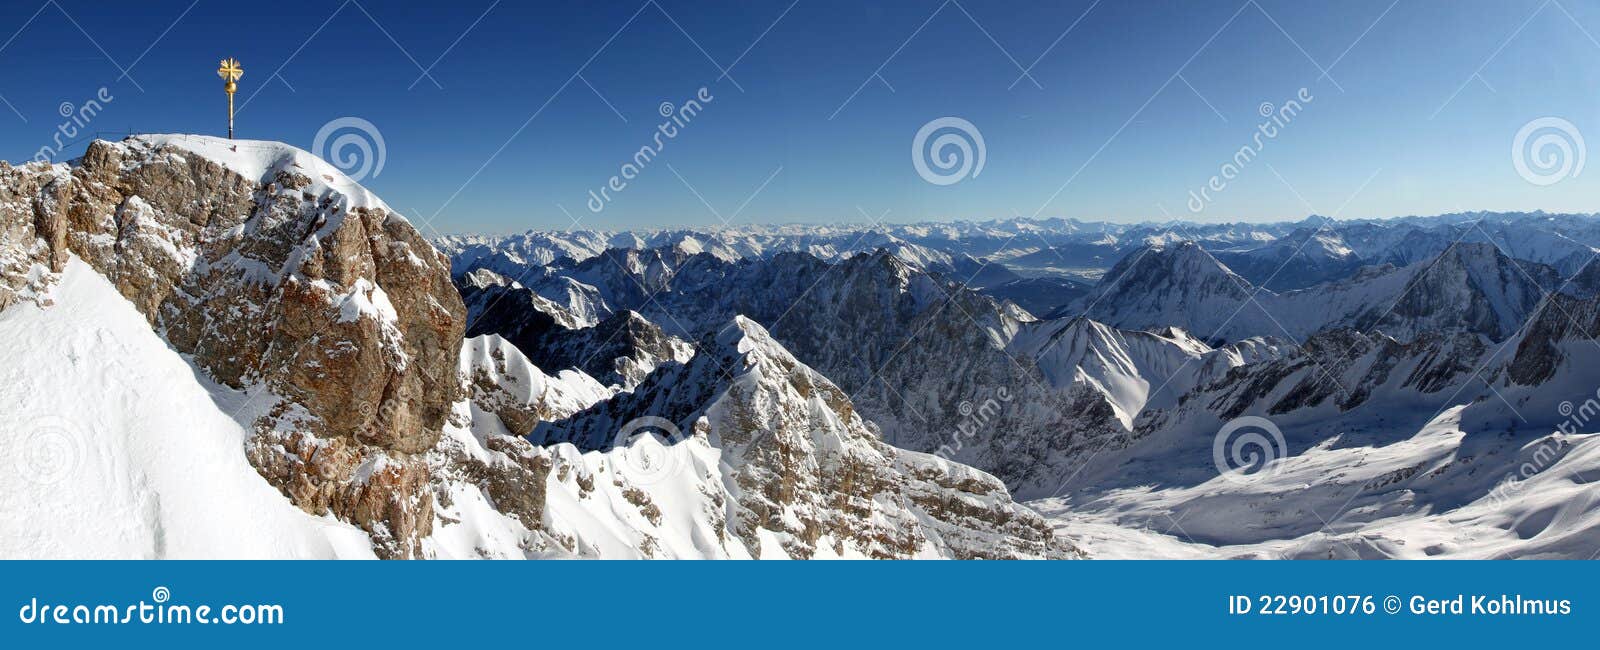 Zugspitze Panorama. Panorama schoss vom Gipfel von Zugspitze und von einer Ansicht über die Alpen